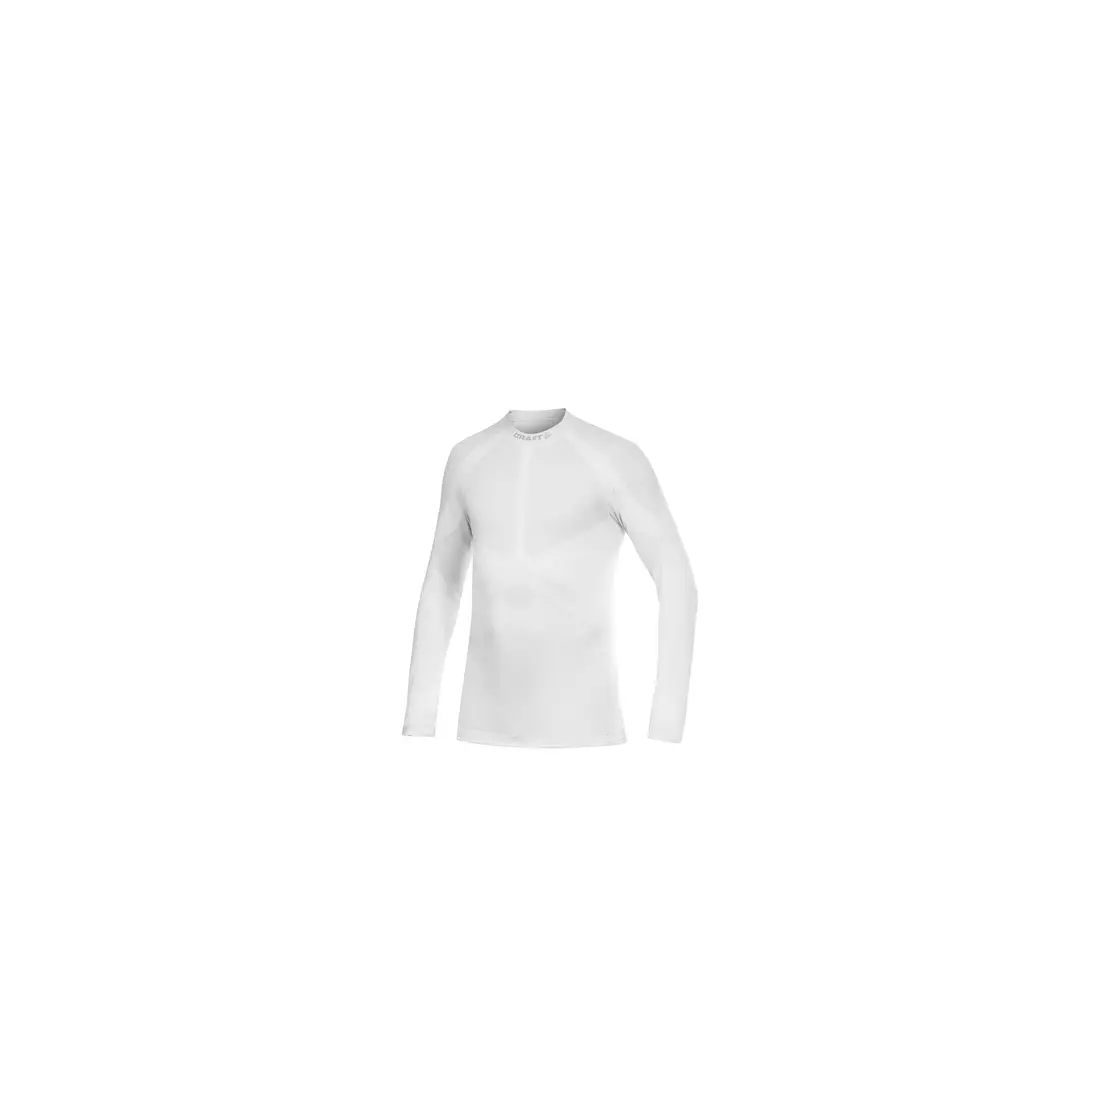 CRAFT WARM - thermal underwear - 1901637-2900 - men's T-shirt